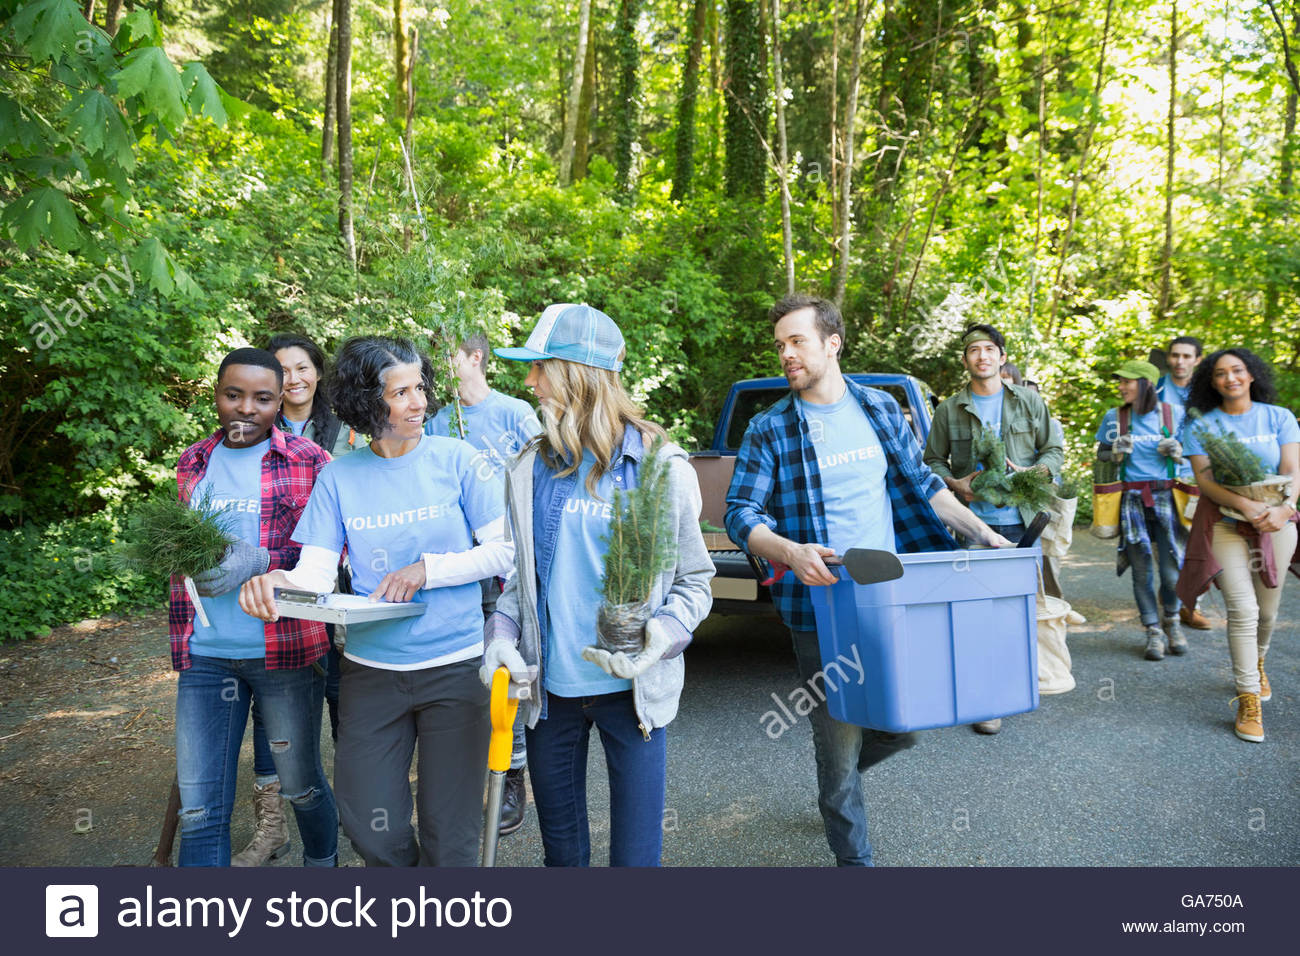 Tree planting volunteers in woods Stock Photo